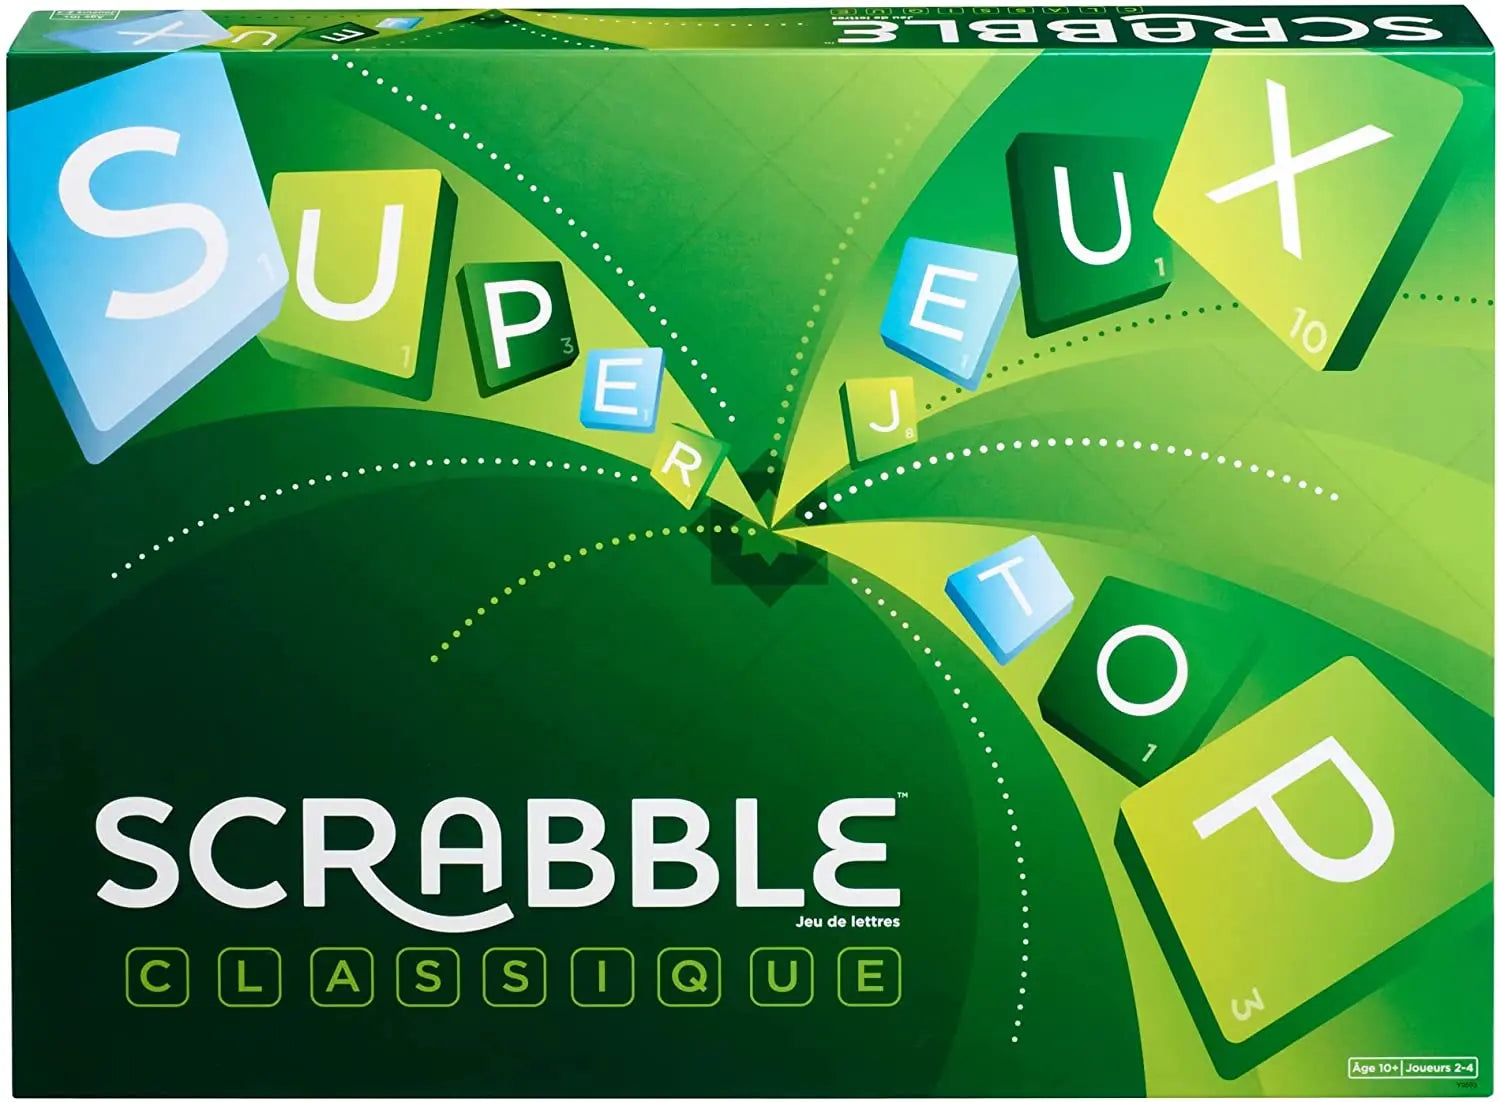 Le Scrabble interdit des mots jugés offensants, les joueurs s'interrogent  sur ce bannissement